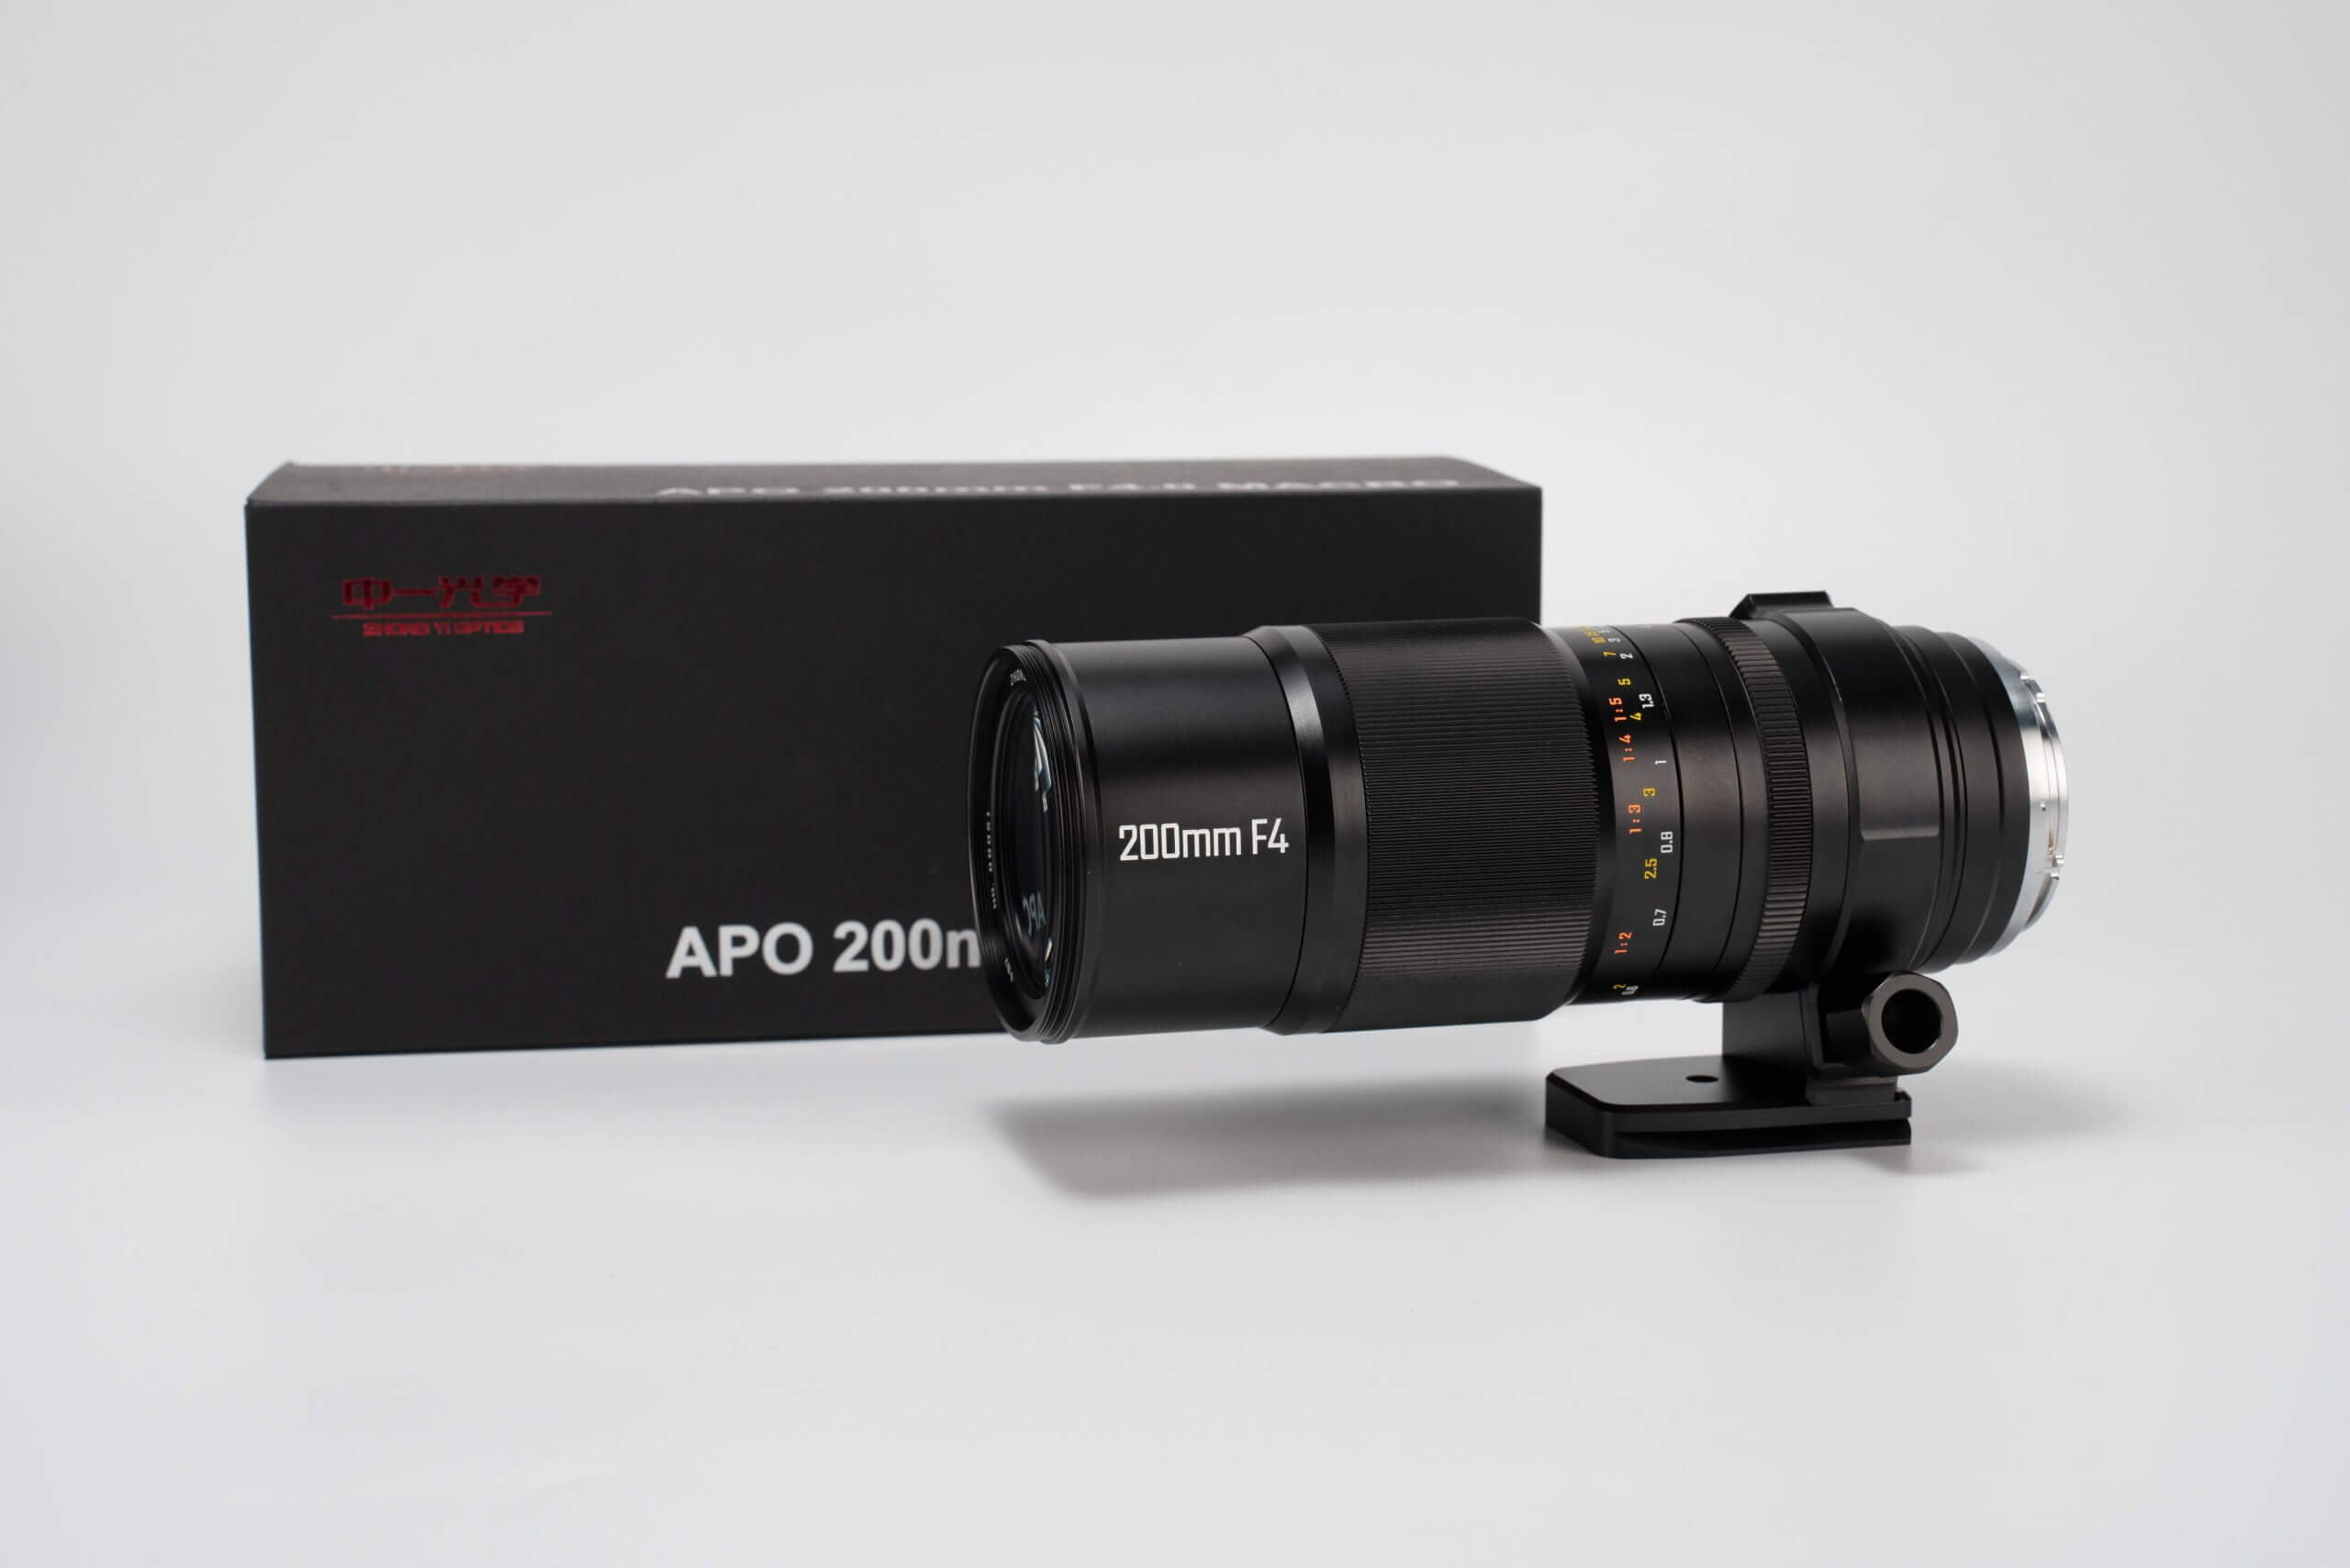 mitakon200f4apomacro 7 scaled - Zhong Yi Optics officially announces the Mitakon 200mm F/4 APO Macro Lens